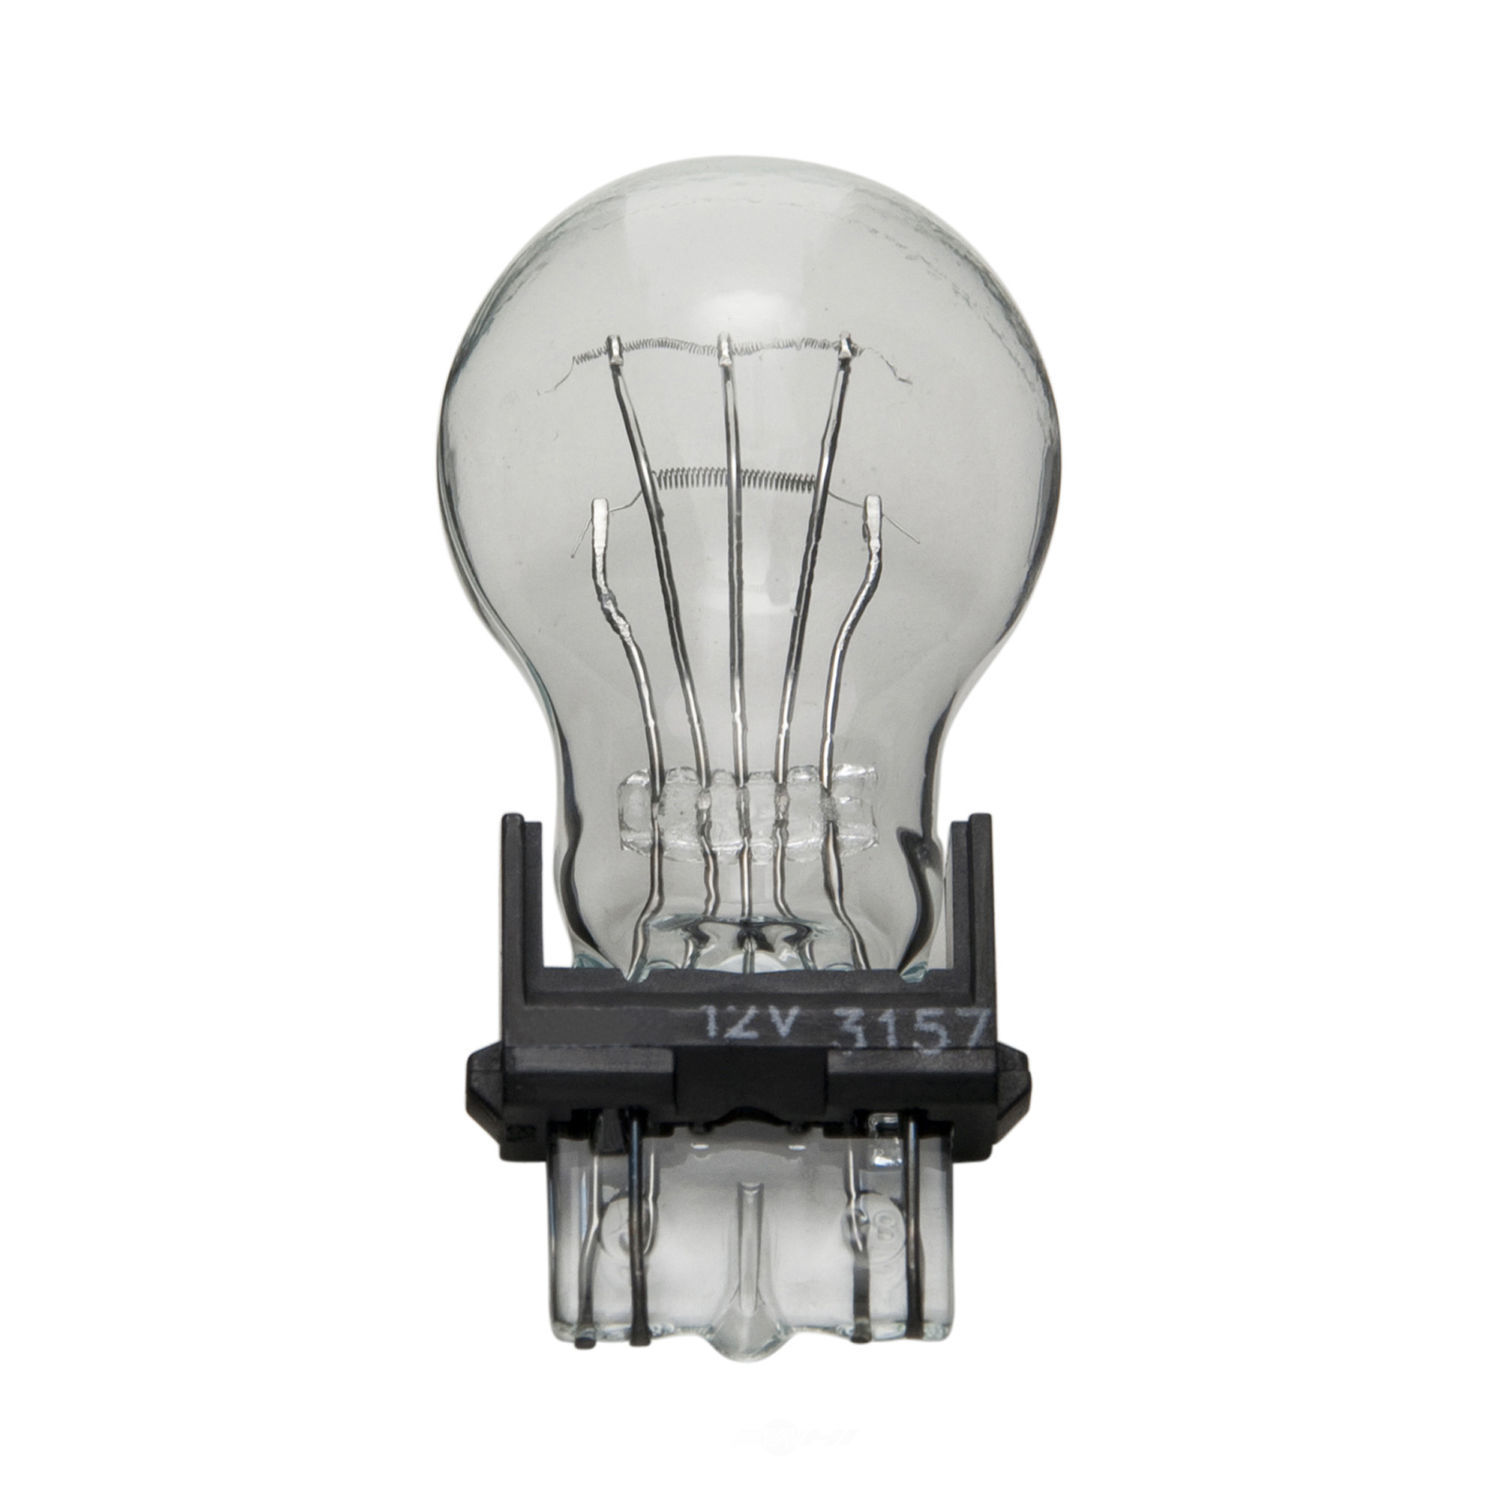 WAGNER LIGHTING - Side Marker Light Bulb (Front) - WLP 3157